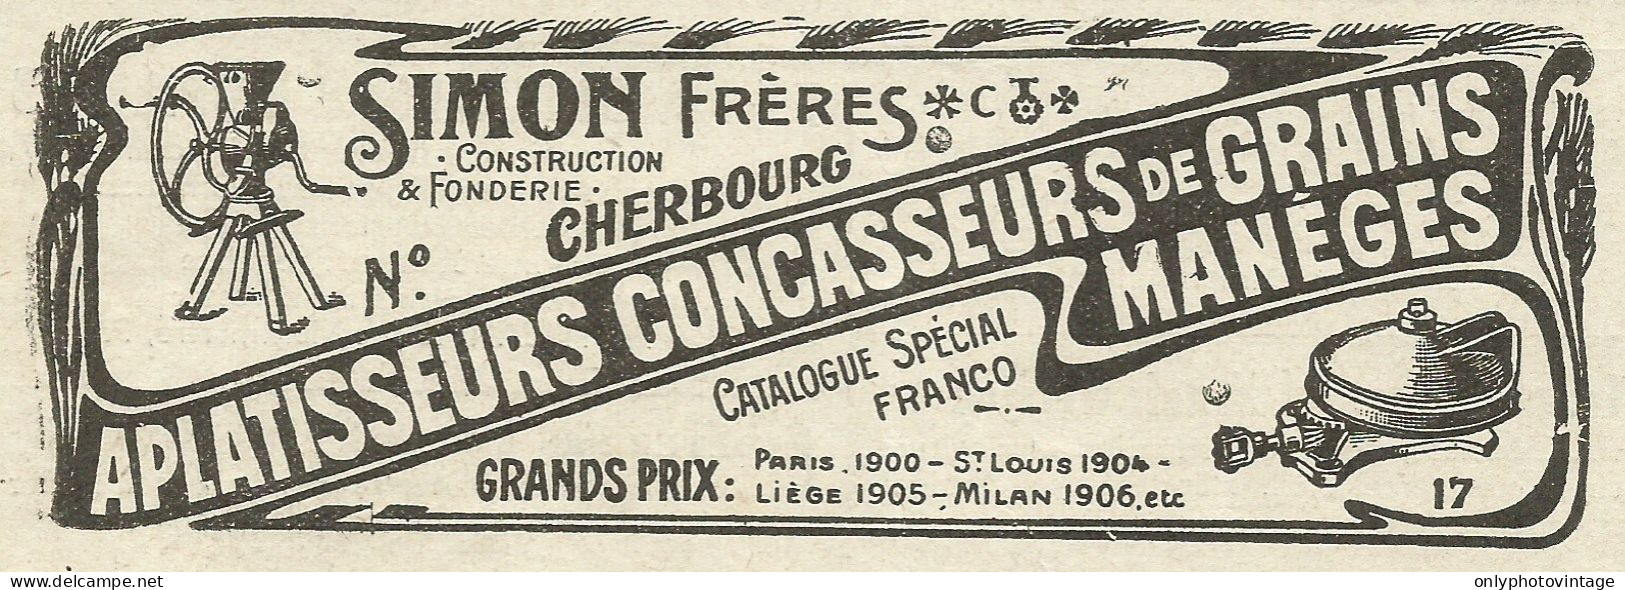 Simon Frères - Construction & Fonderie - Pubblicità 1934 - Advertising - Reclame